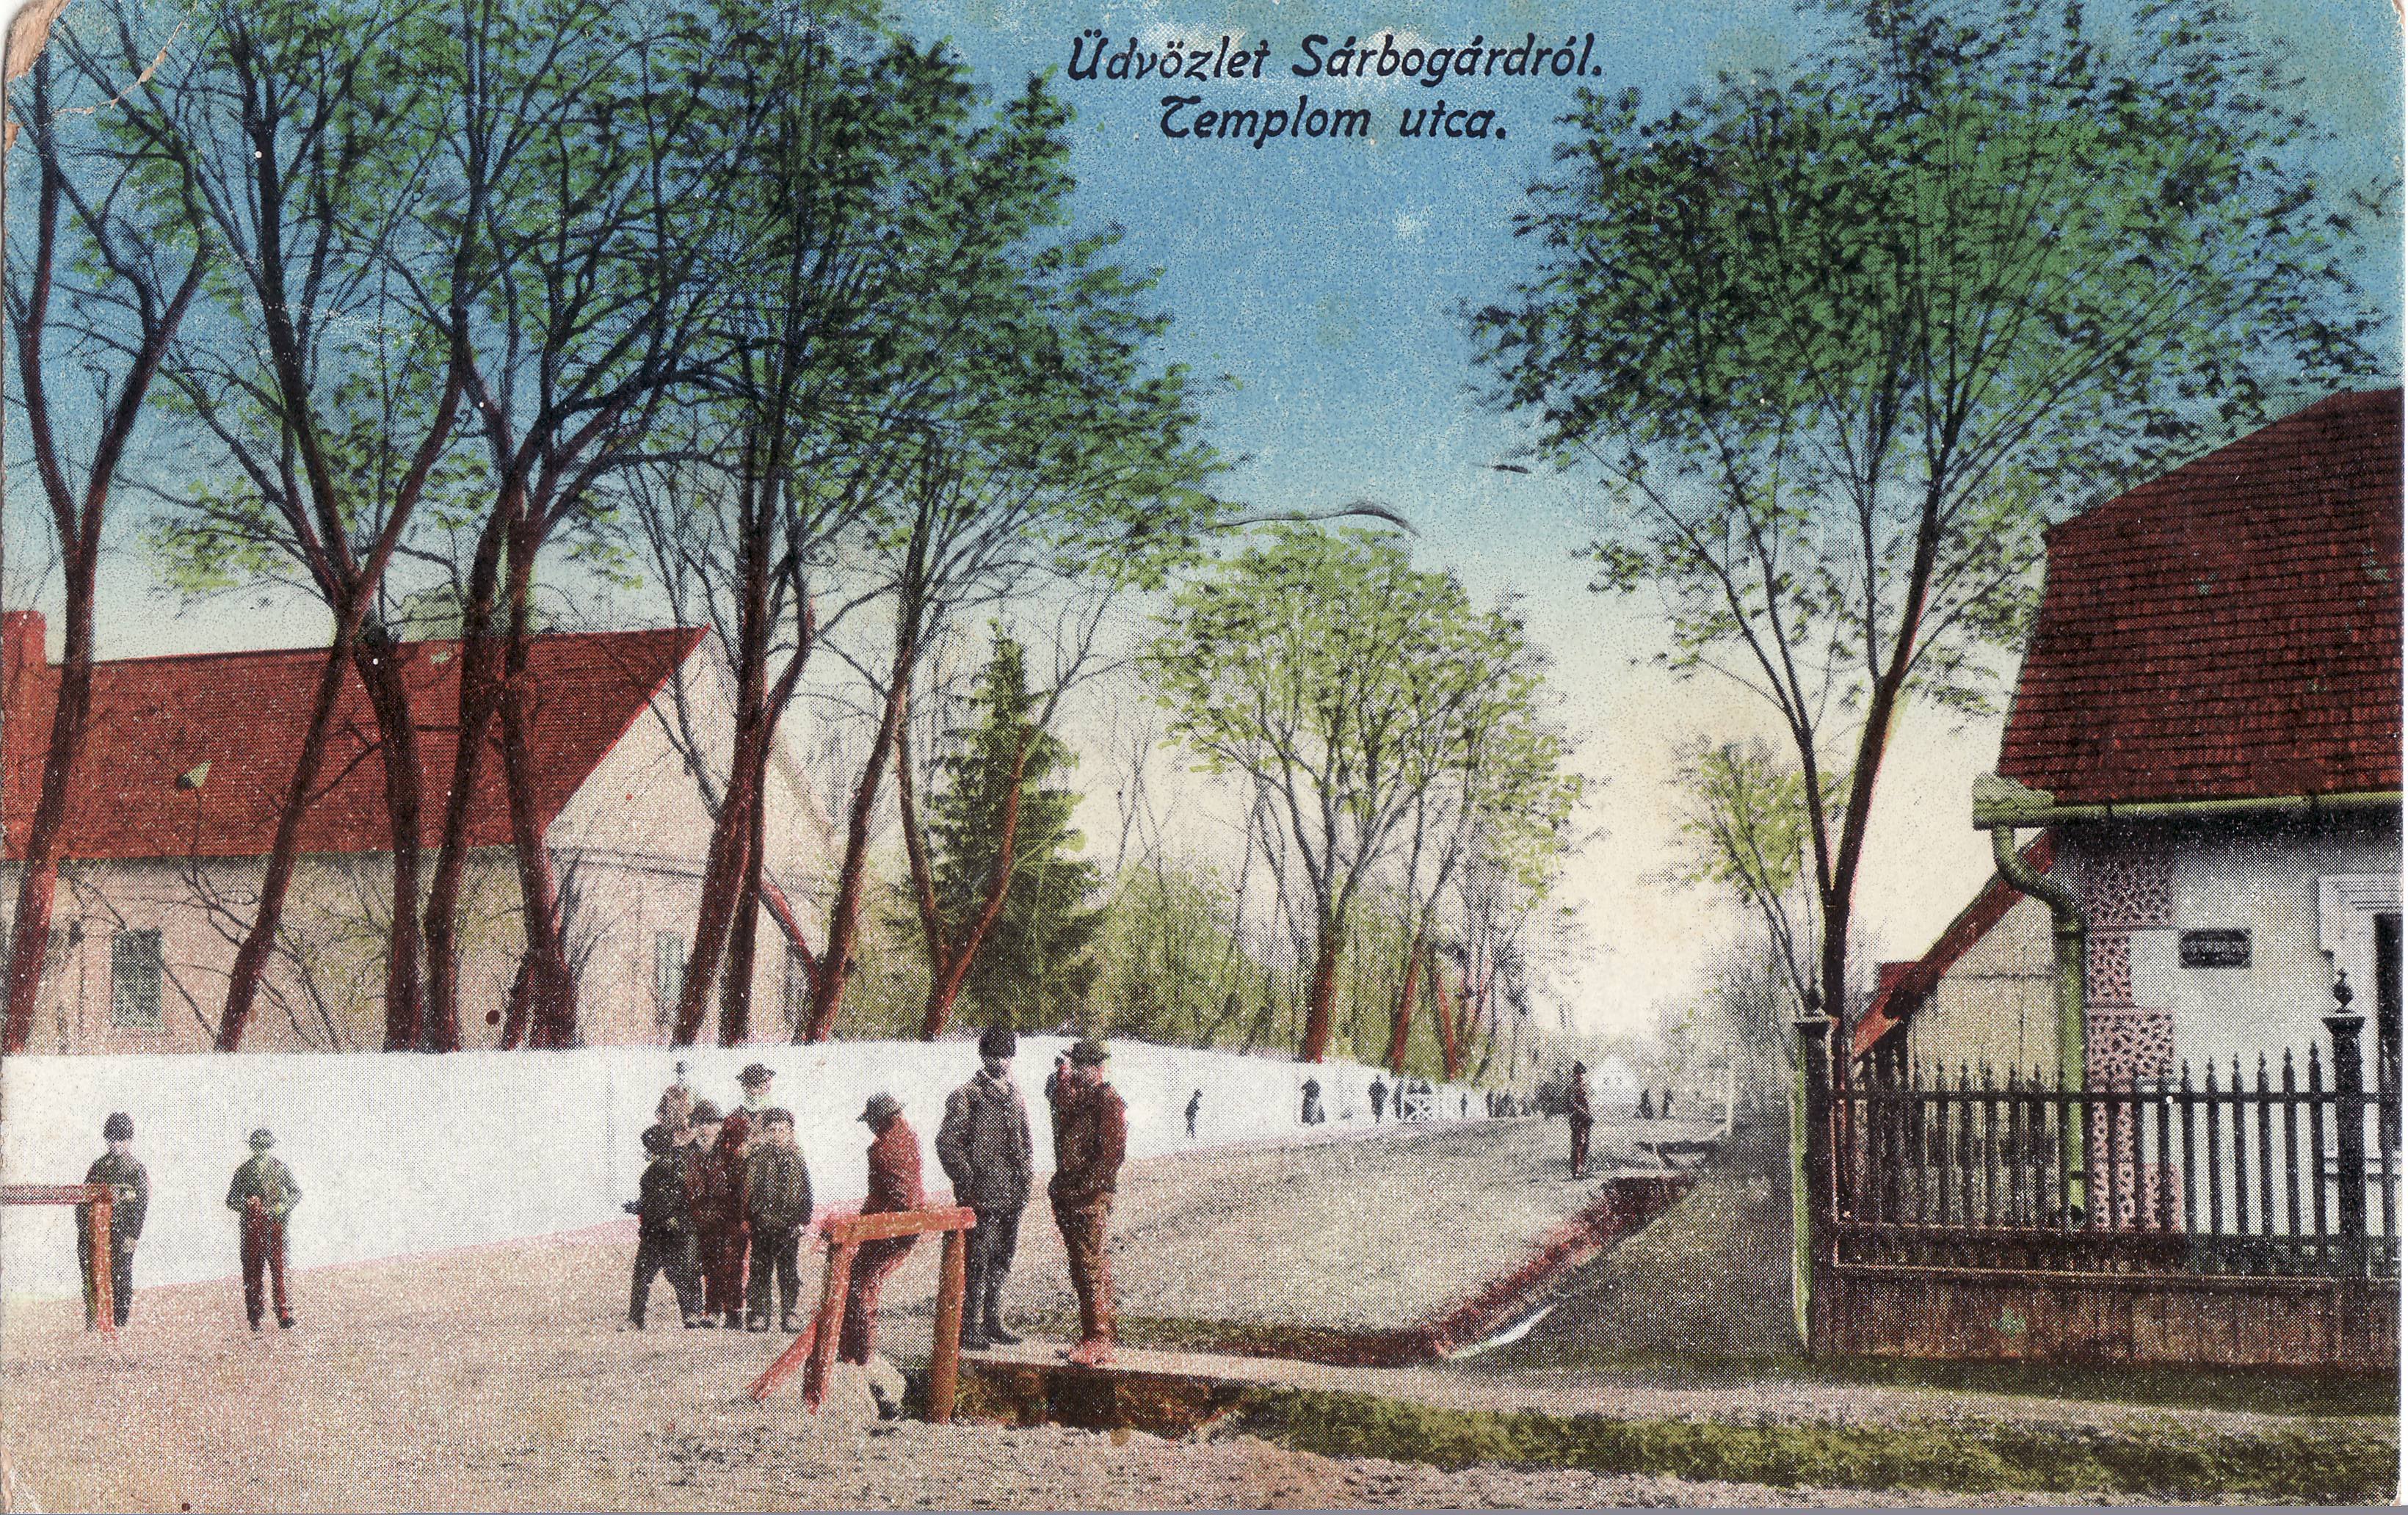 Üdvözlet Sárbogárdról – Templom utca (Magyar Környezetvédelmi és Vízügyi Múzeum - Duna Múzeum CC BY-NC-SA)